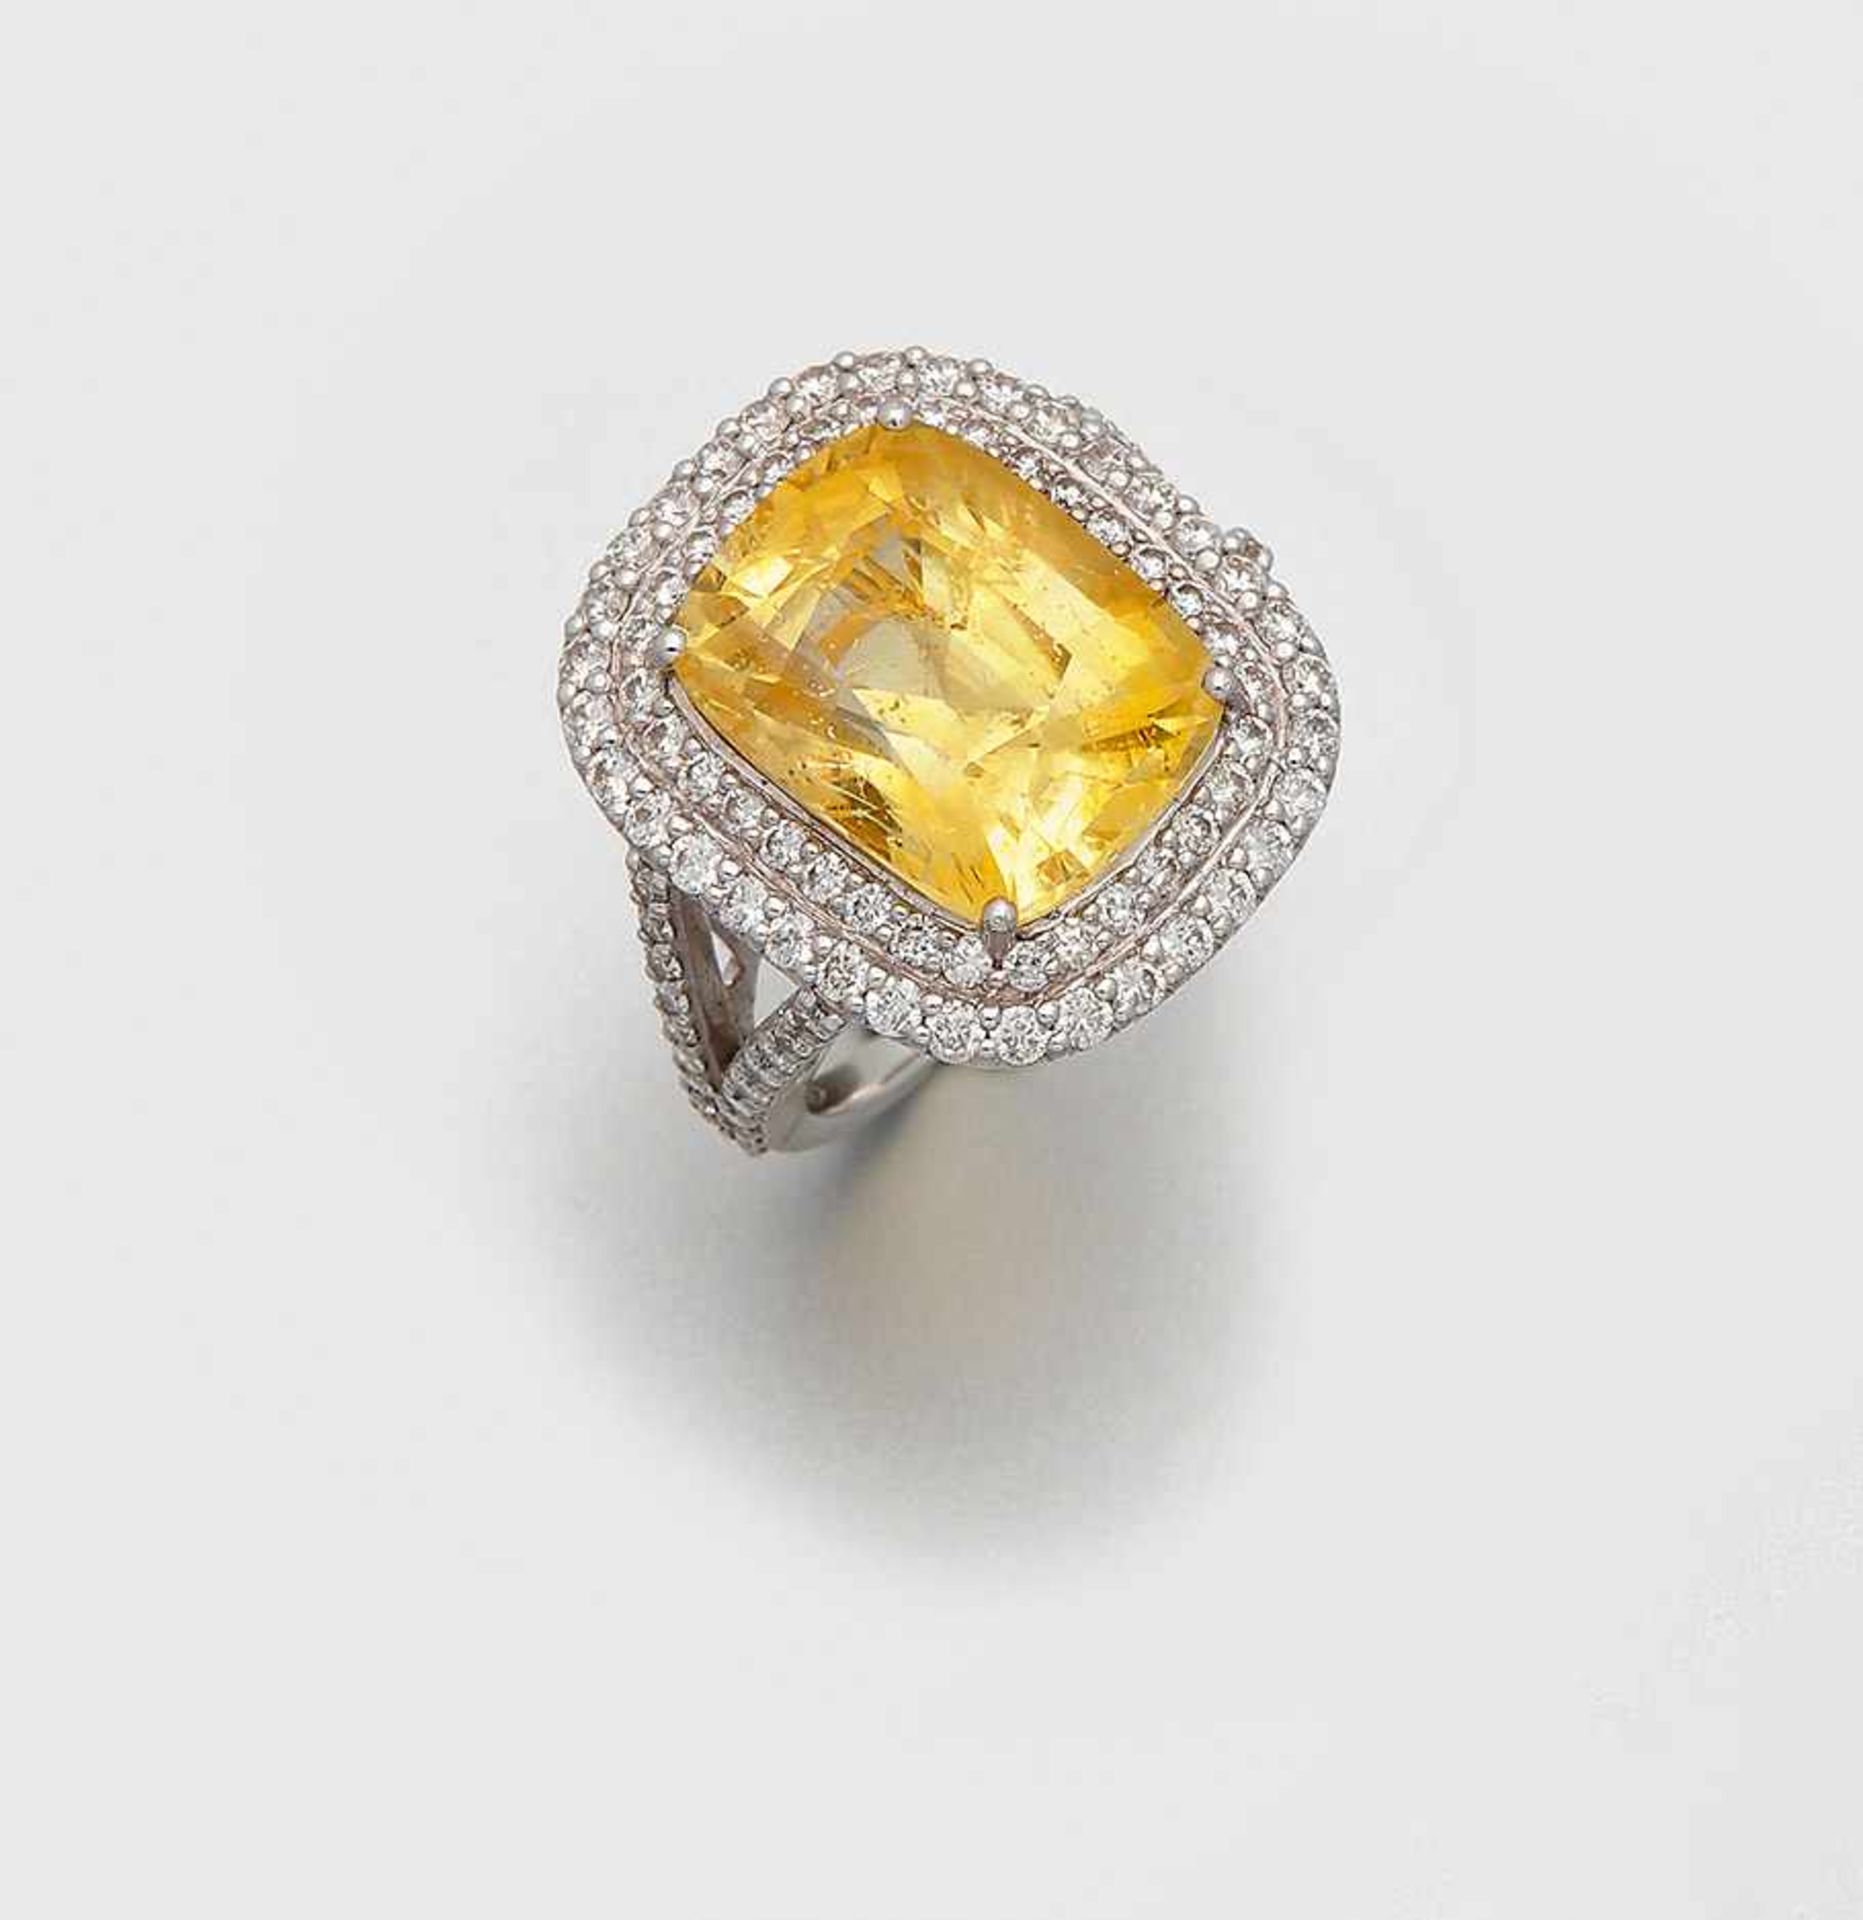 Dekorativer Crossover Ring mit Burma-SaphirenWeißgold, gest. 750. Schauseitig besetzt mit einem